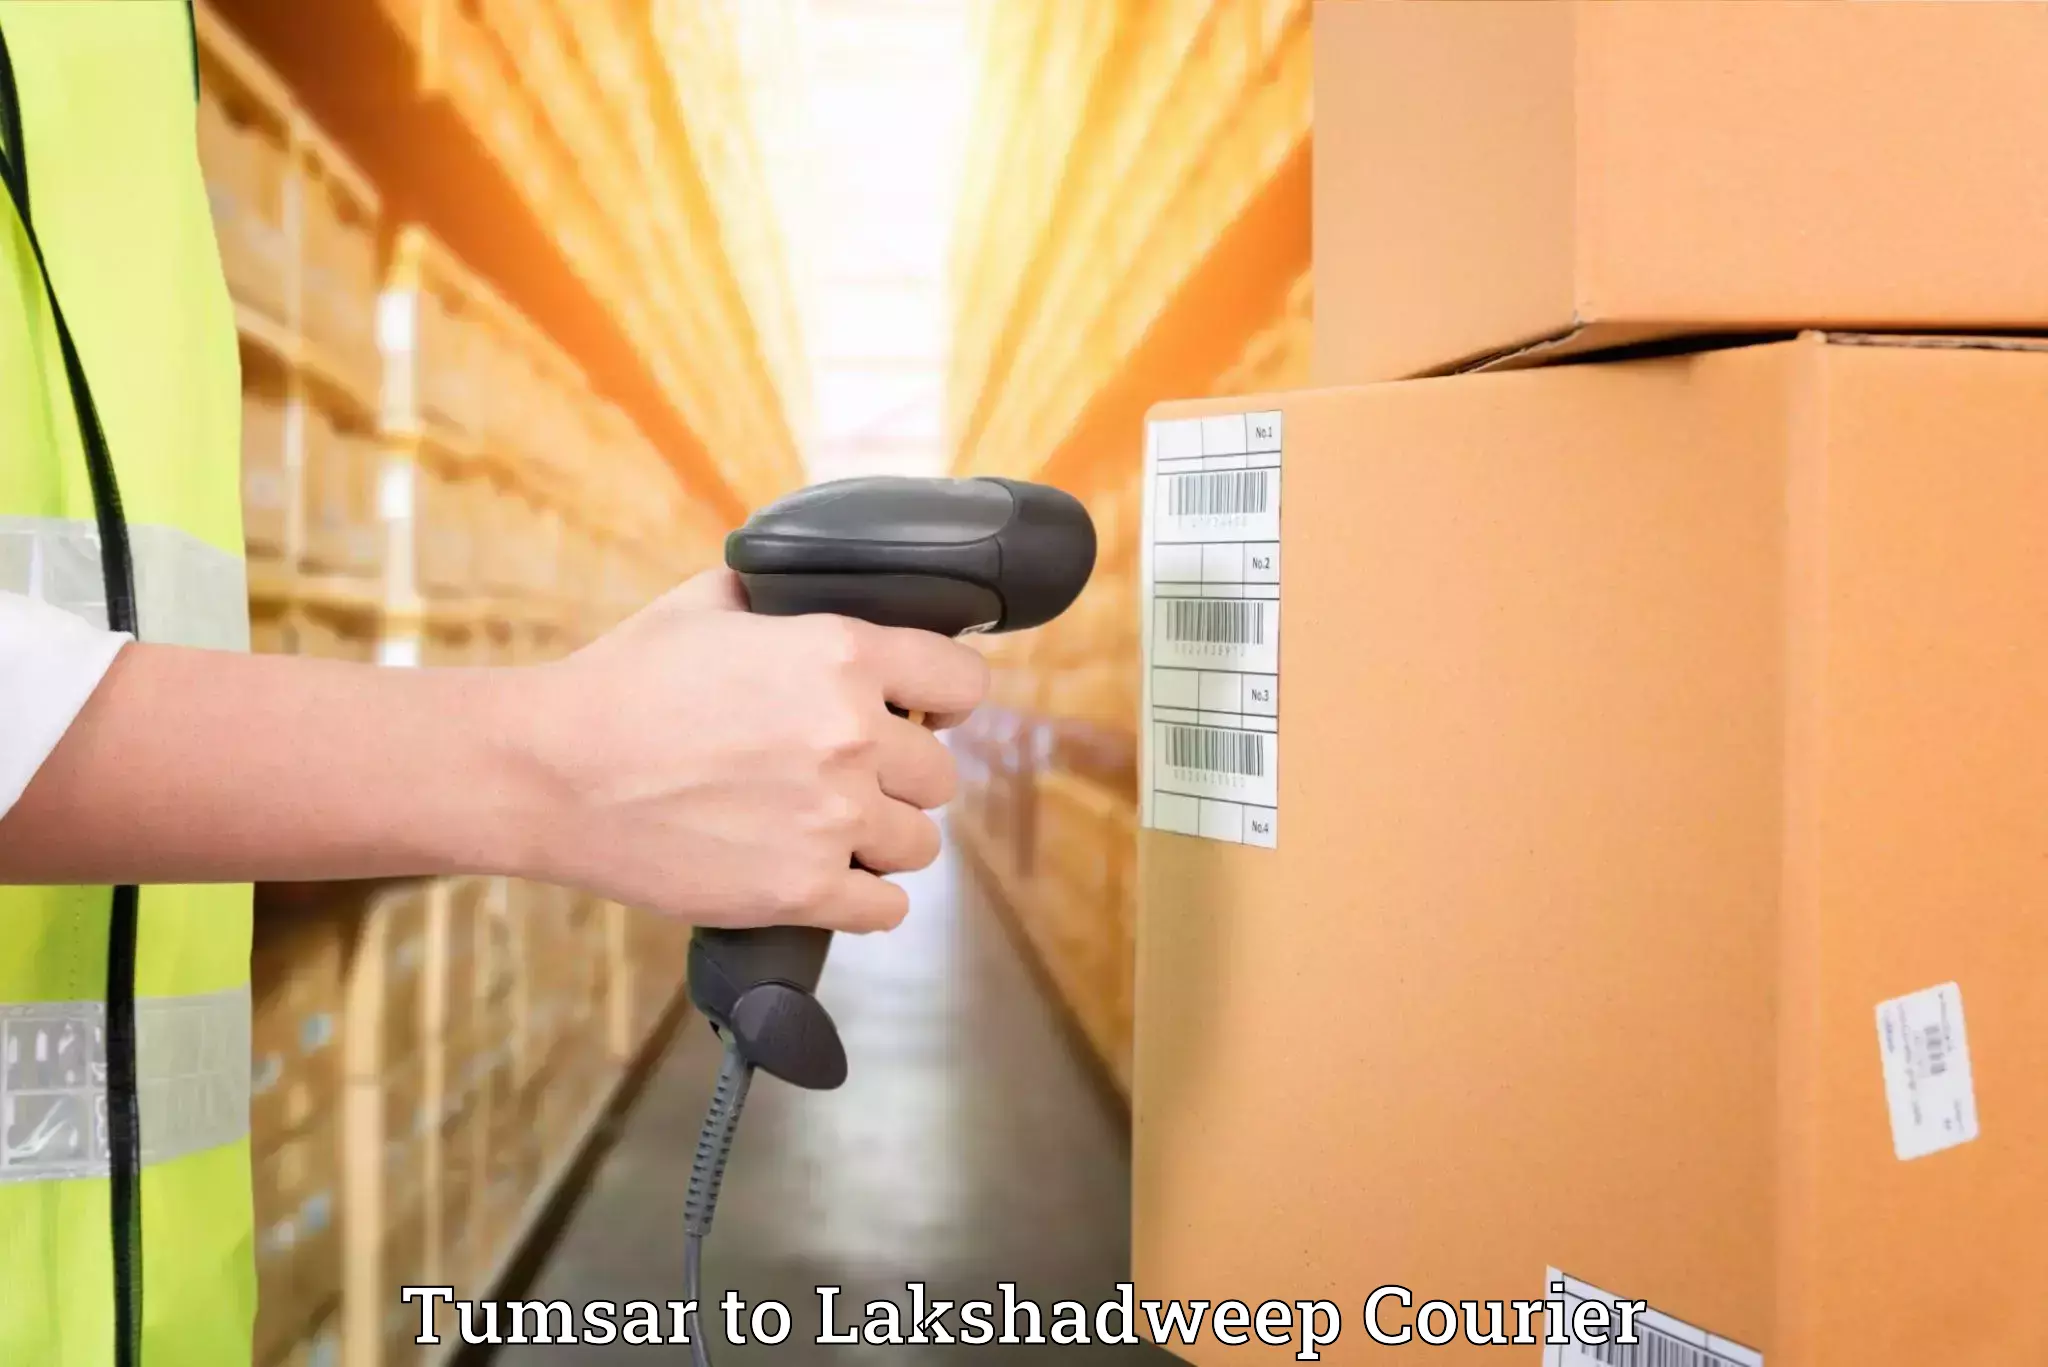 Furniture transport experts Tumsar to Lakshadweep